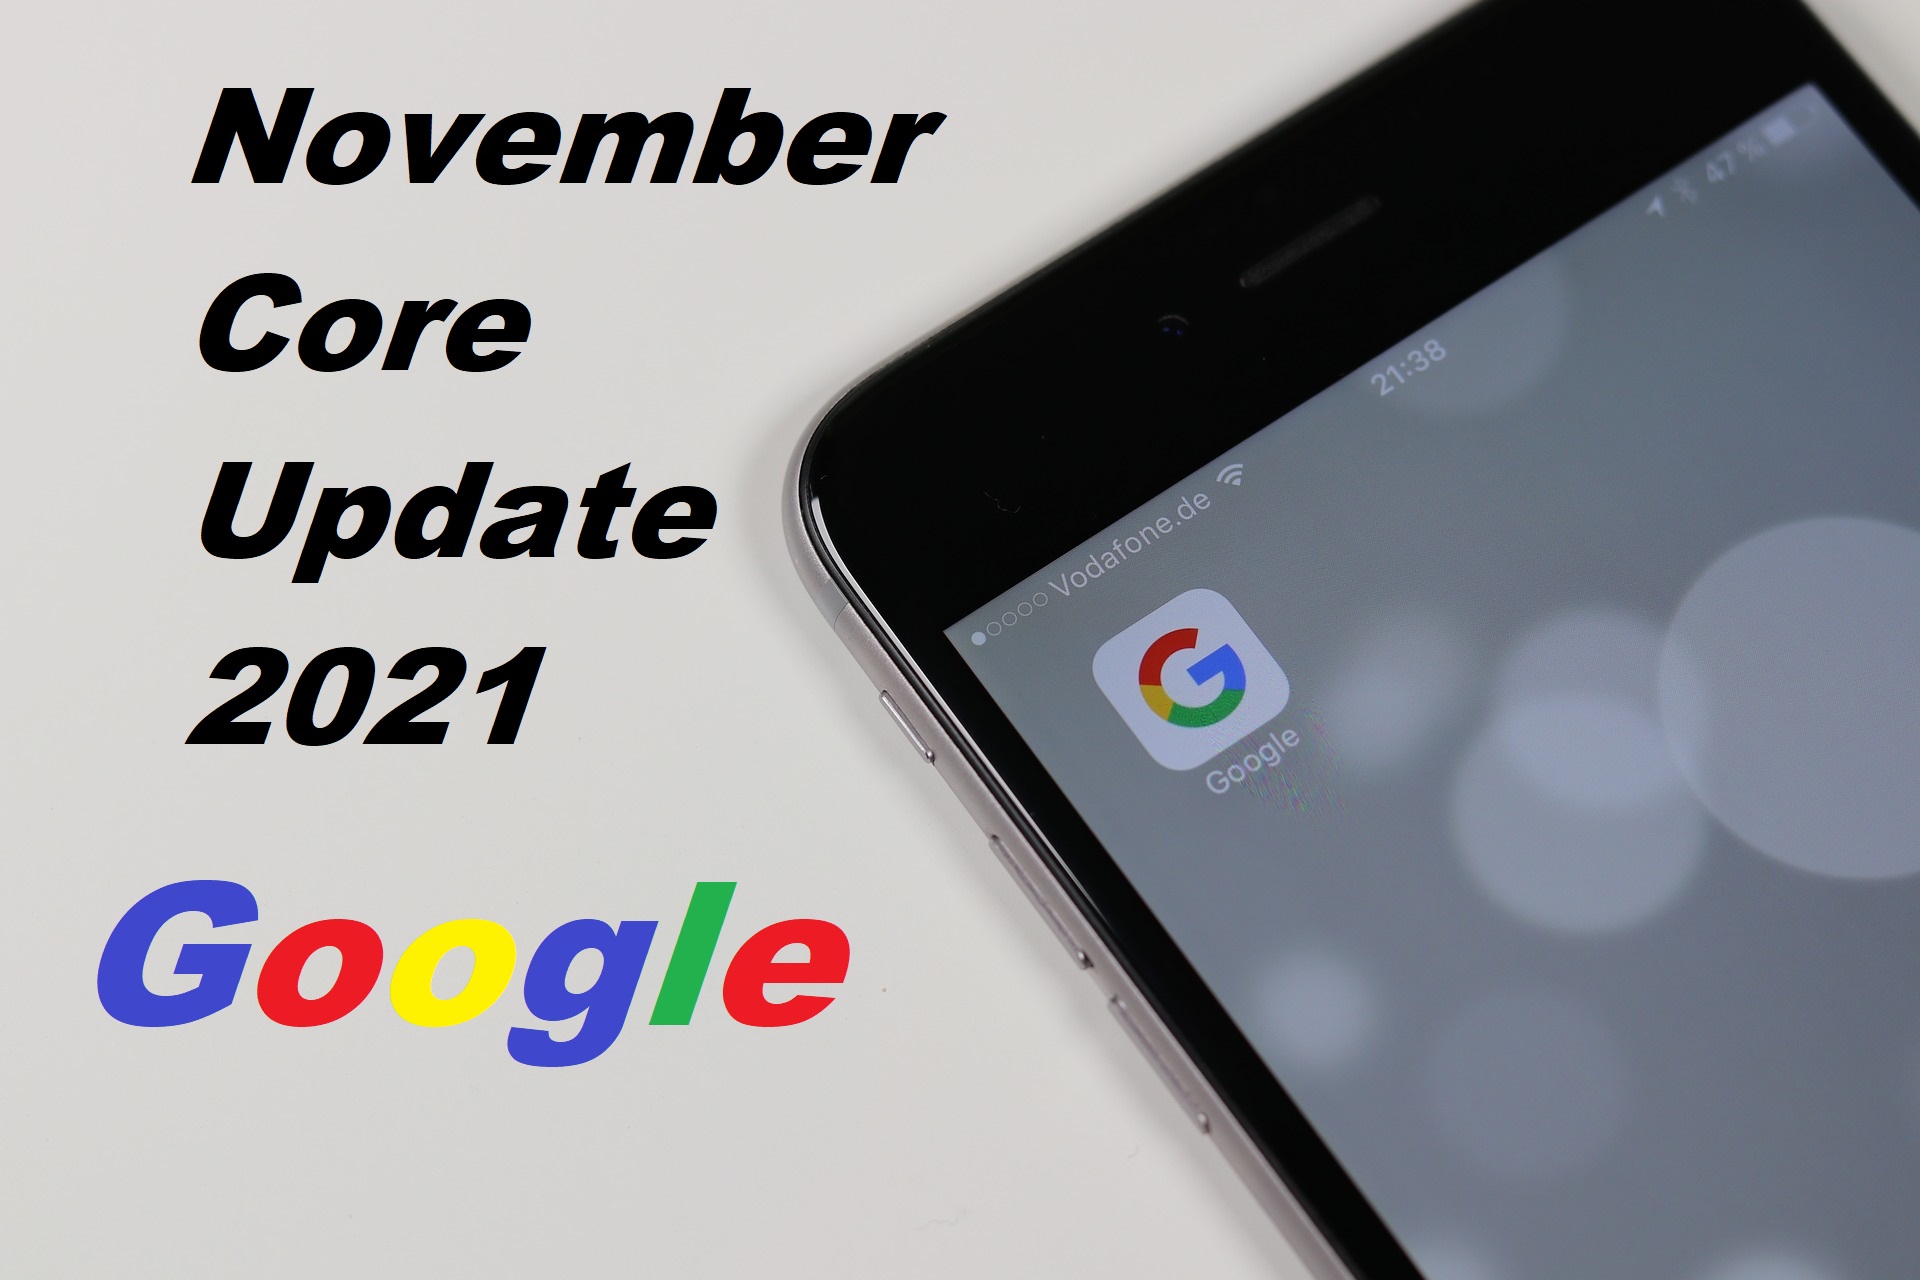 November core update